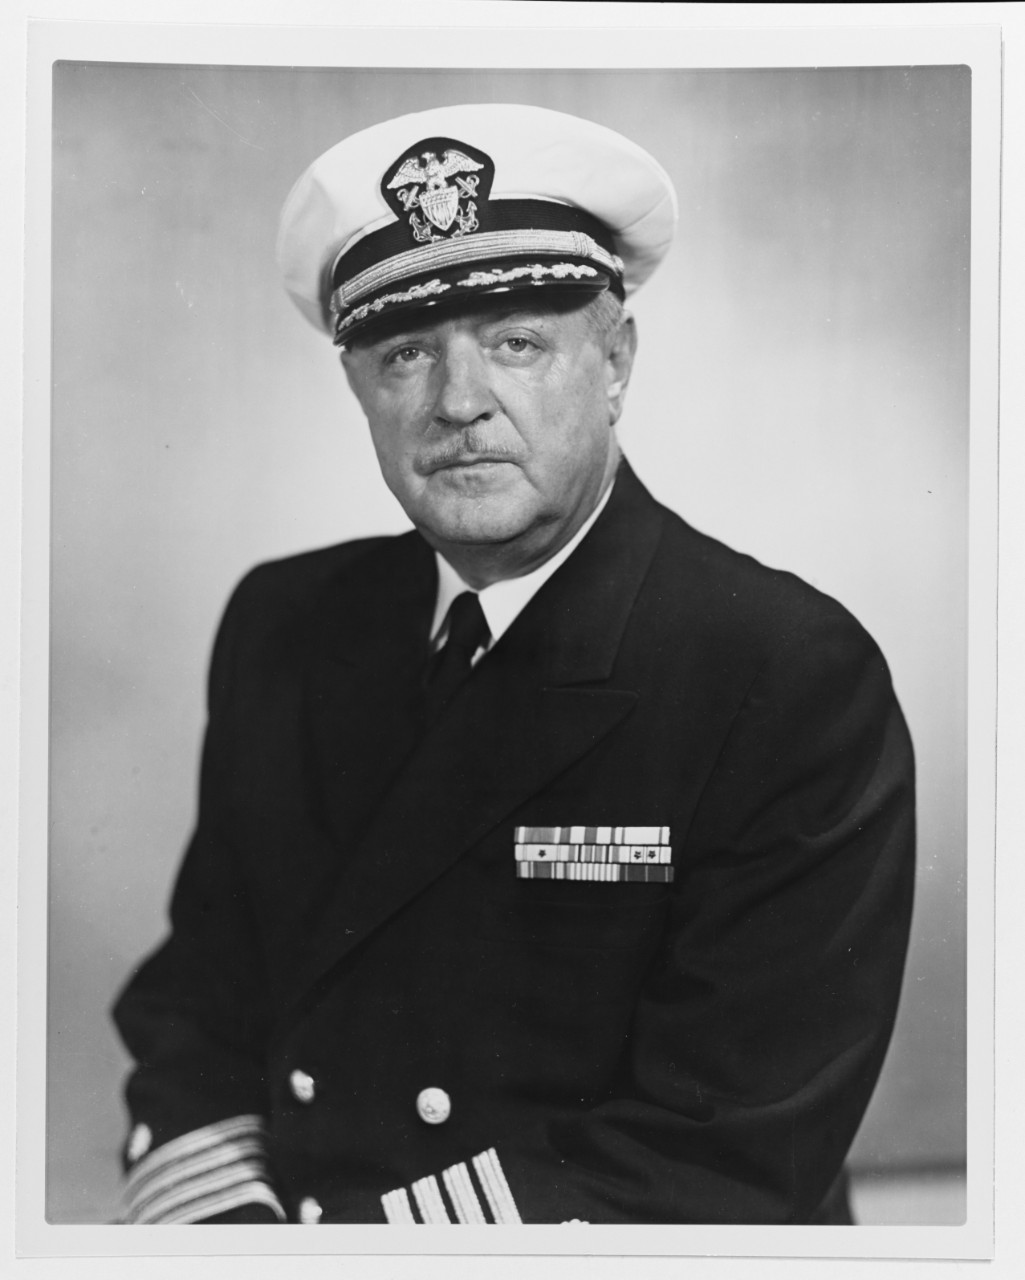 Captain Curtiss William Schantz, U.S. Navy